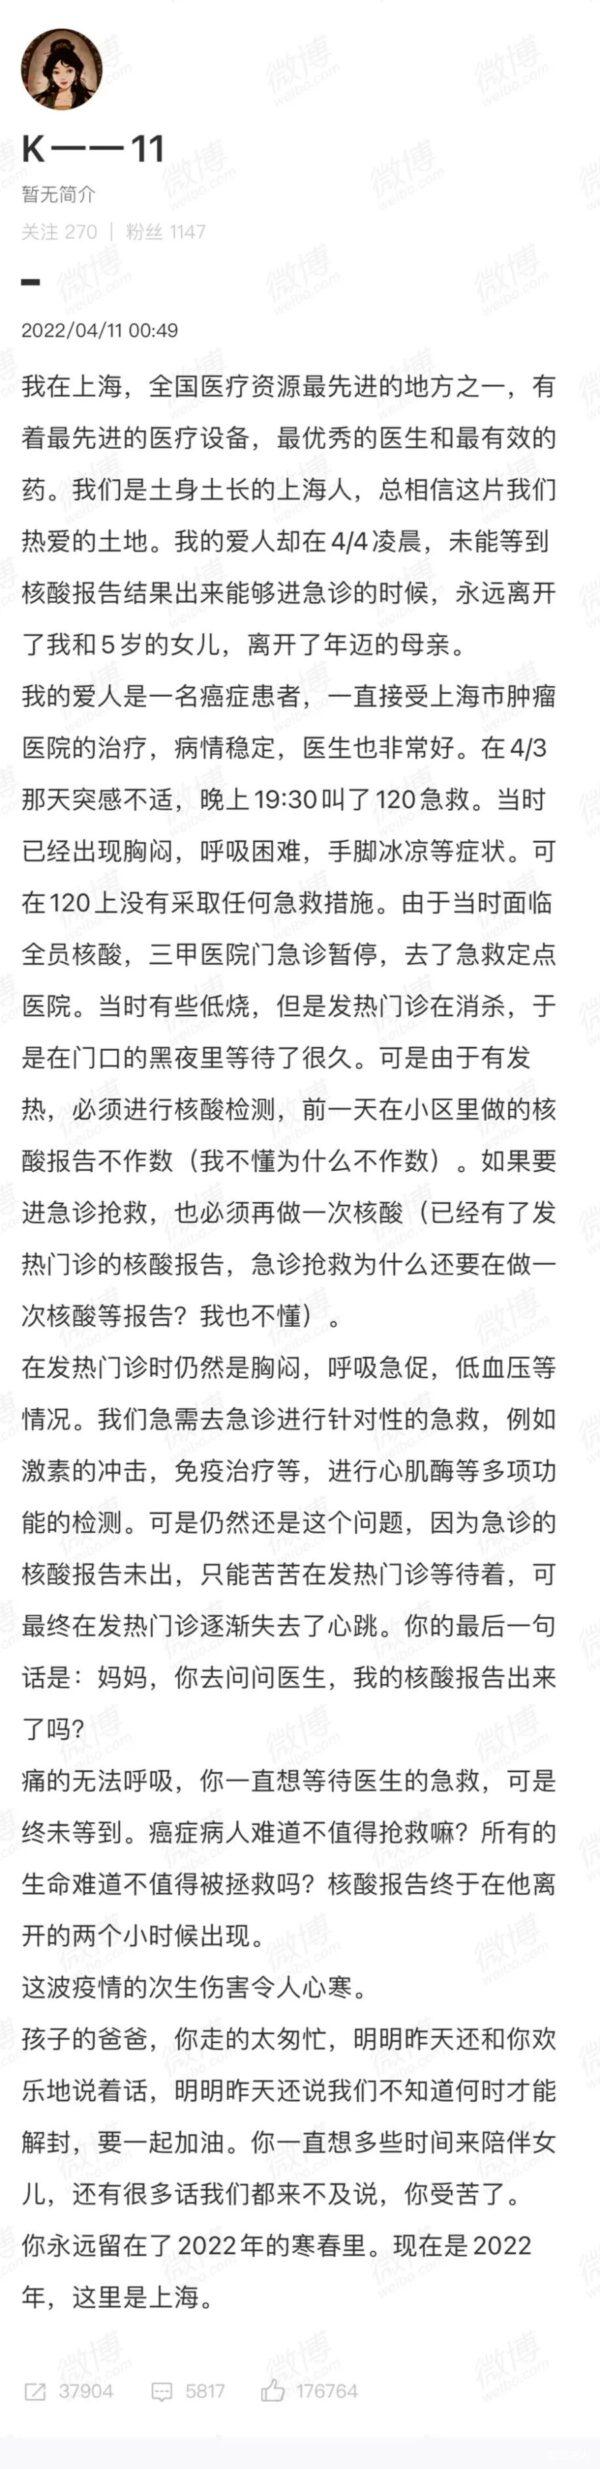 网文《上海人忍耐已到极限》点击超两千万 一度被封